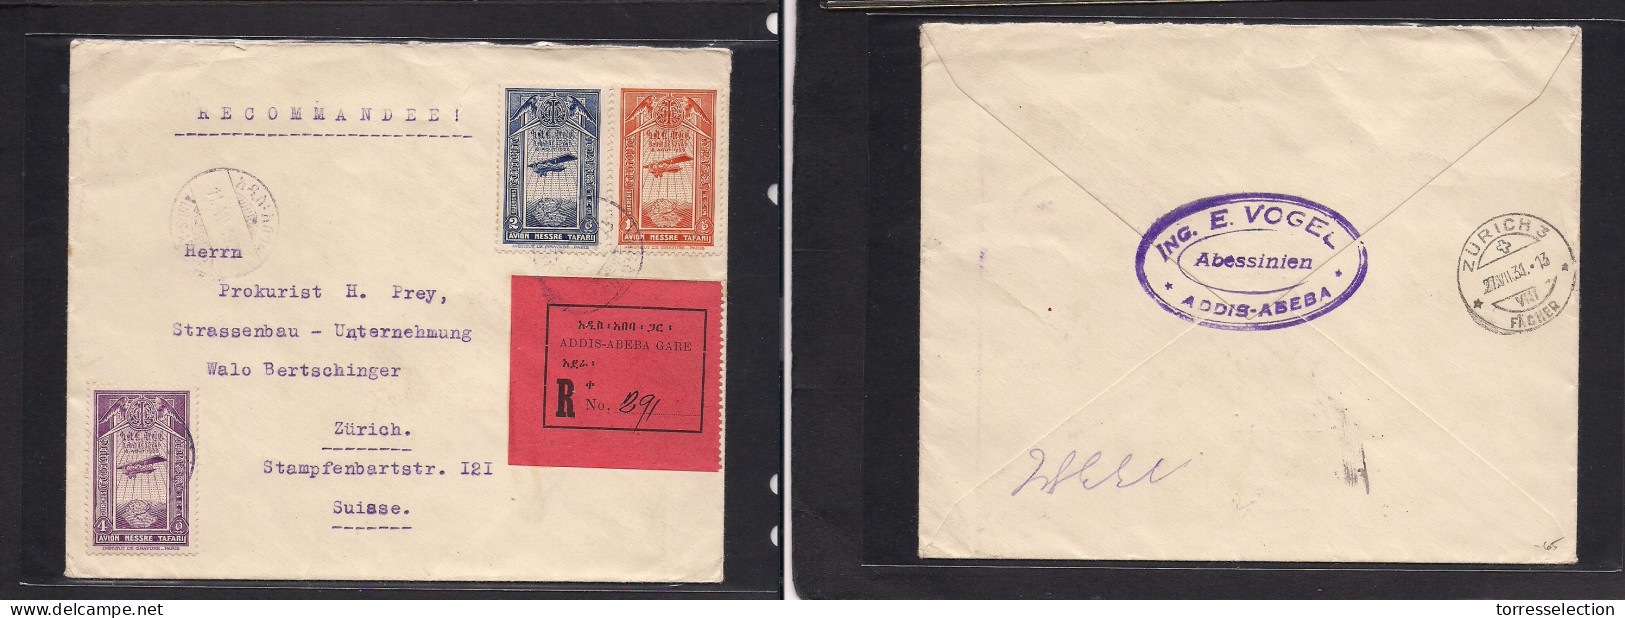 ETHIOPIA. 1931 (11 July) Addis Abeba - Switzerland, Zurich (27 July) Registered Air Multifkd Envelope. - Ethiopie